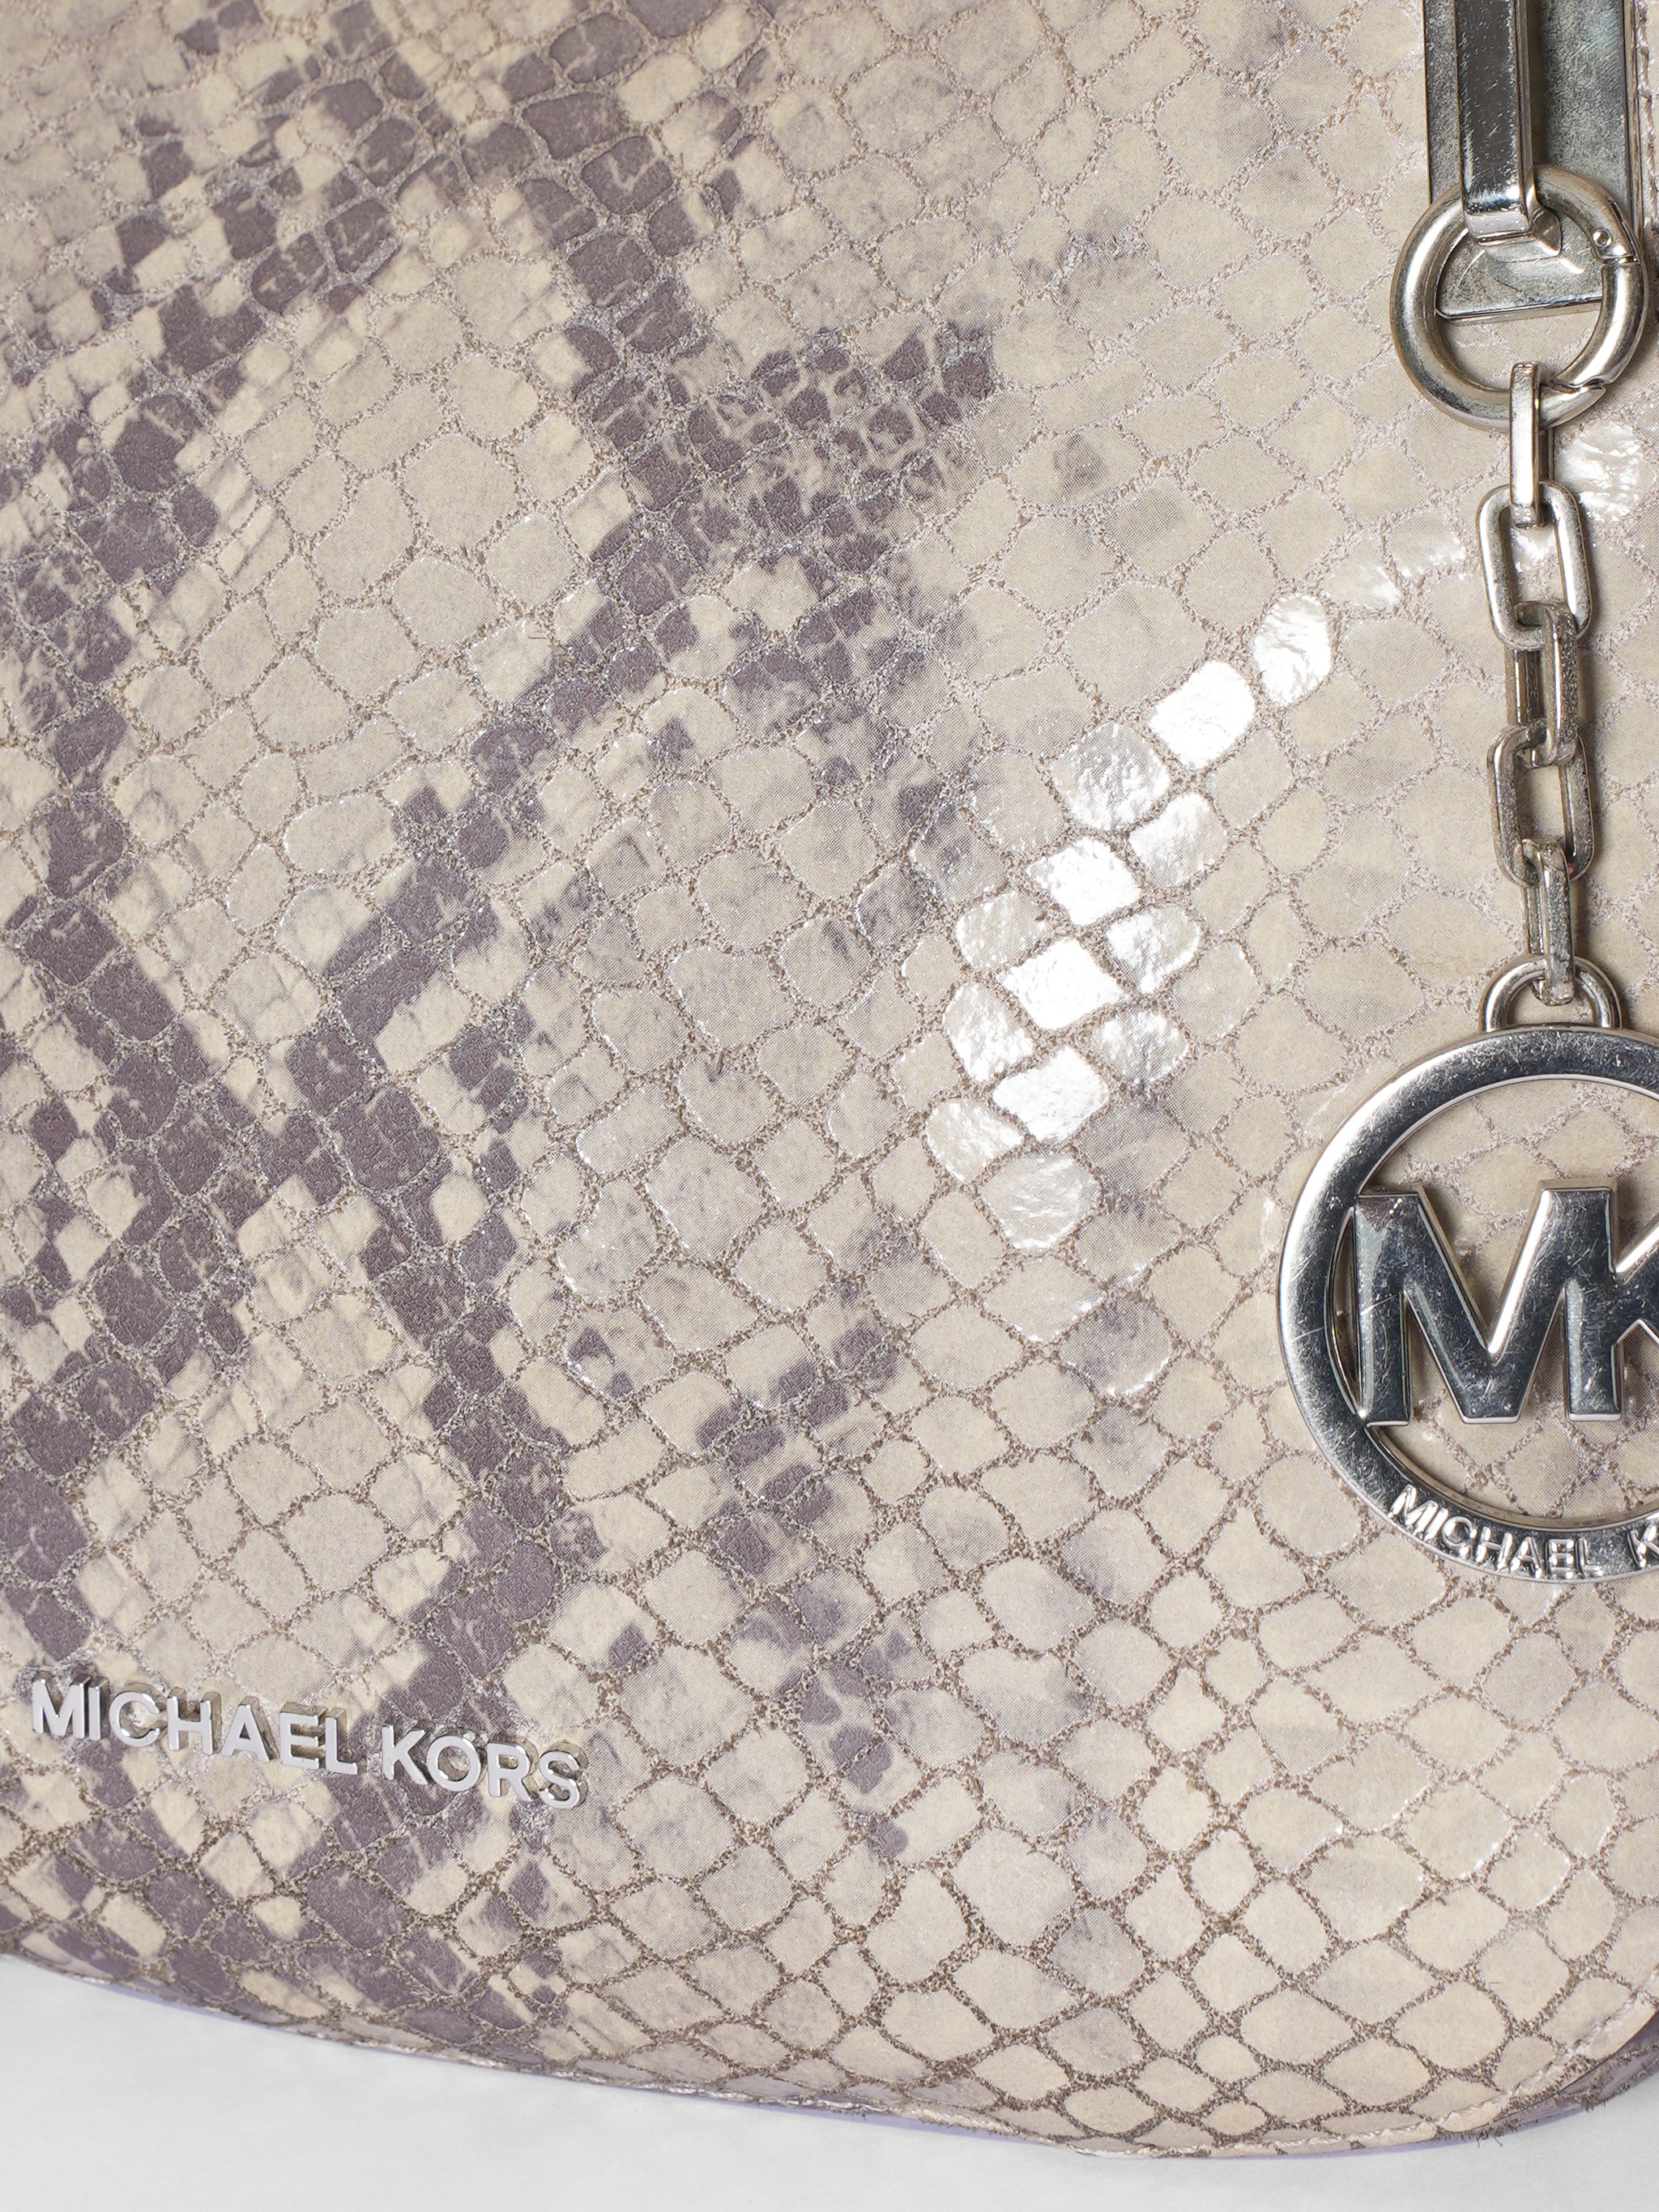 Michael Kors Mini Snake Skin Embossed Bag